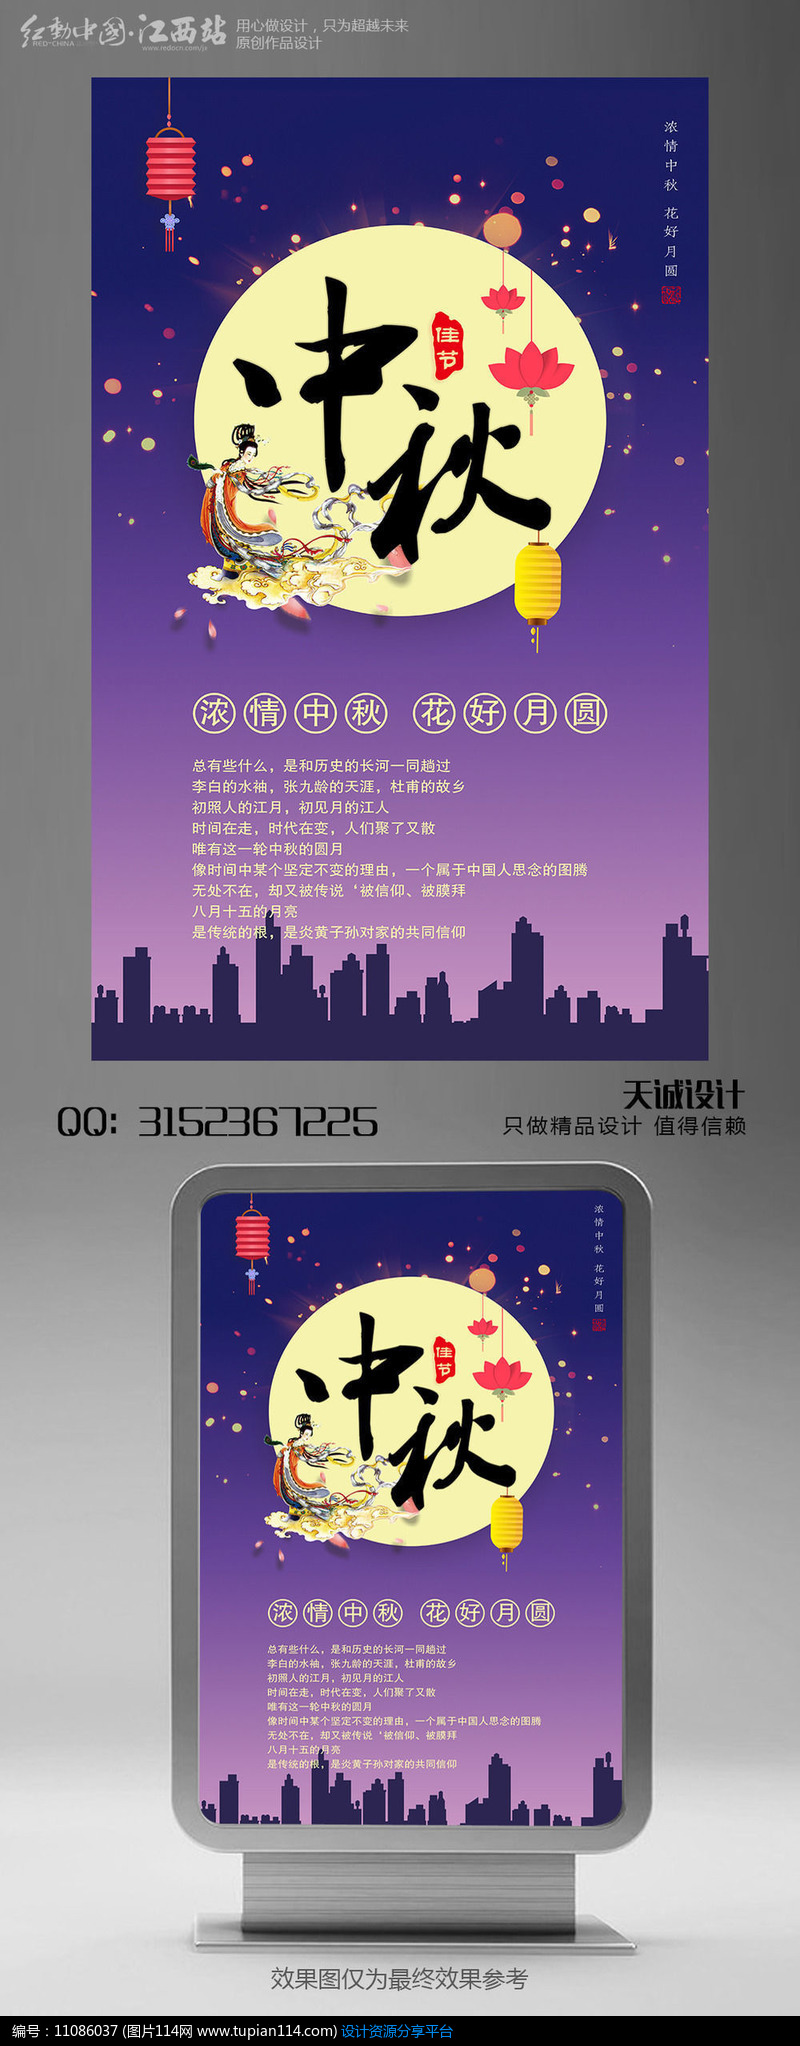 简约中秋节宣传海报设计模板设计素材免费下载_中秋节